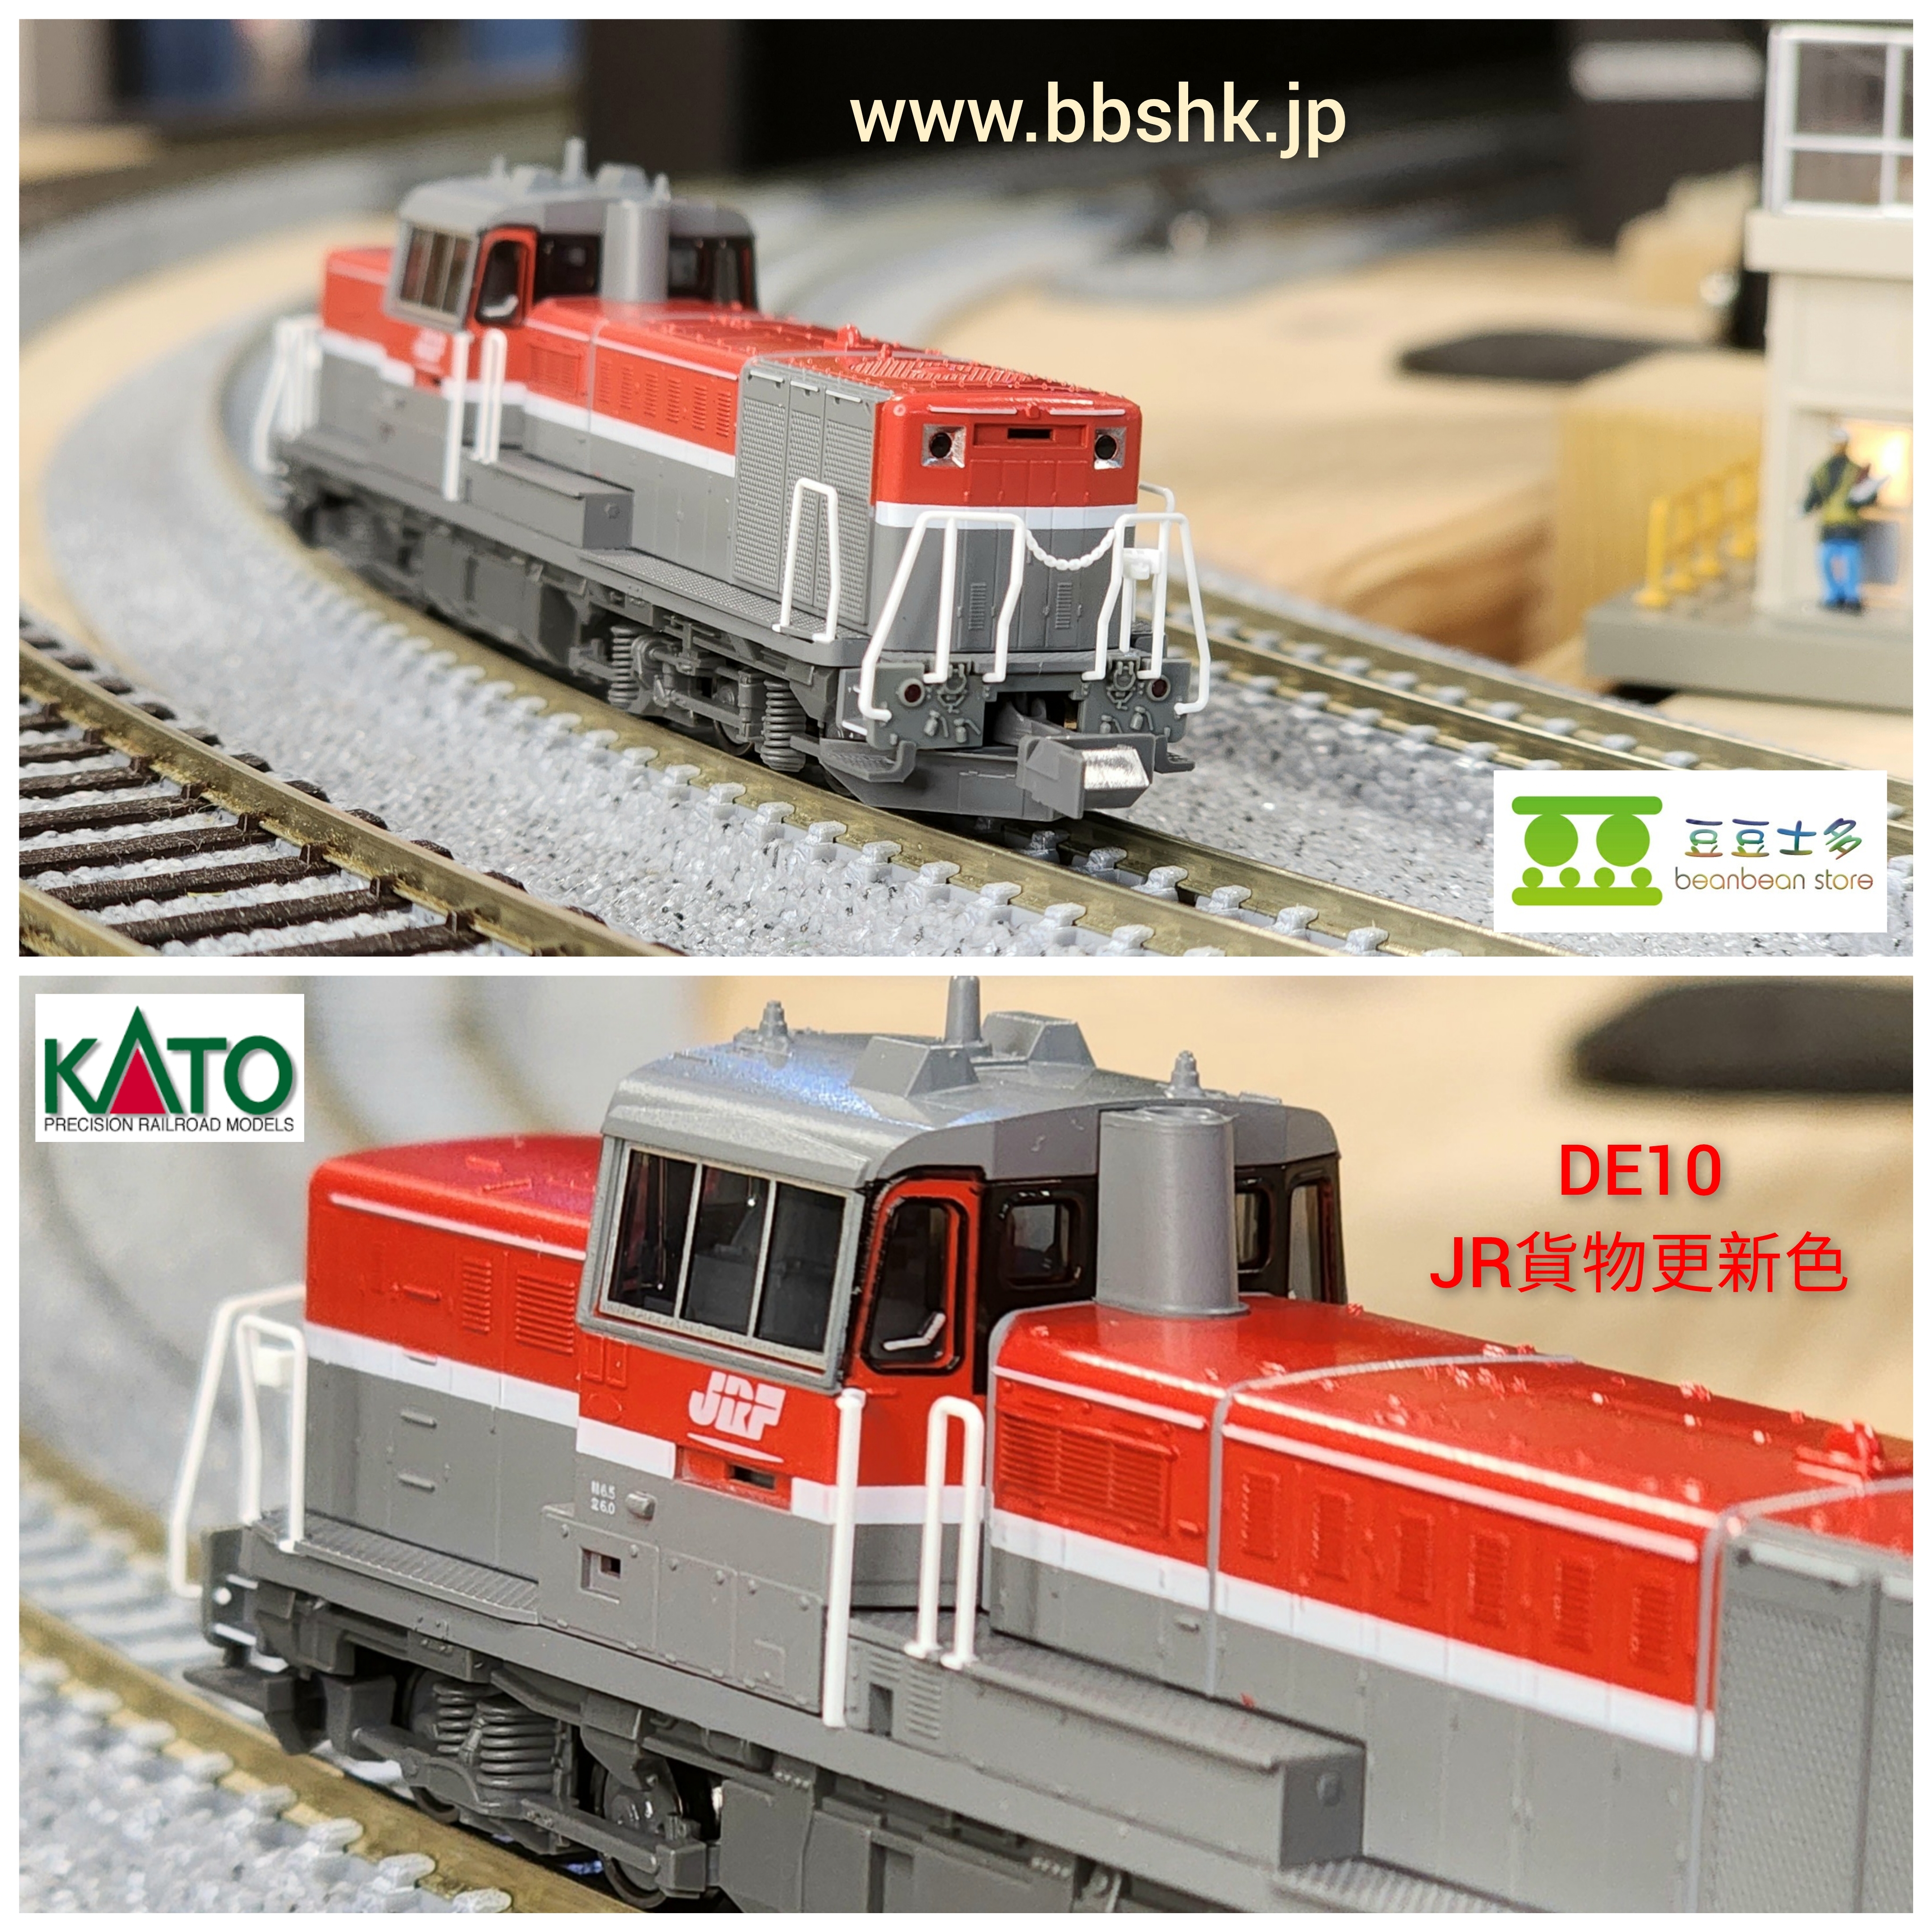 KATO 7011-3 DE10 JR貨物更新色